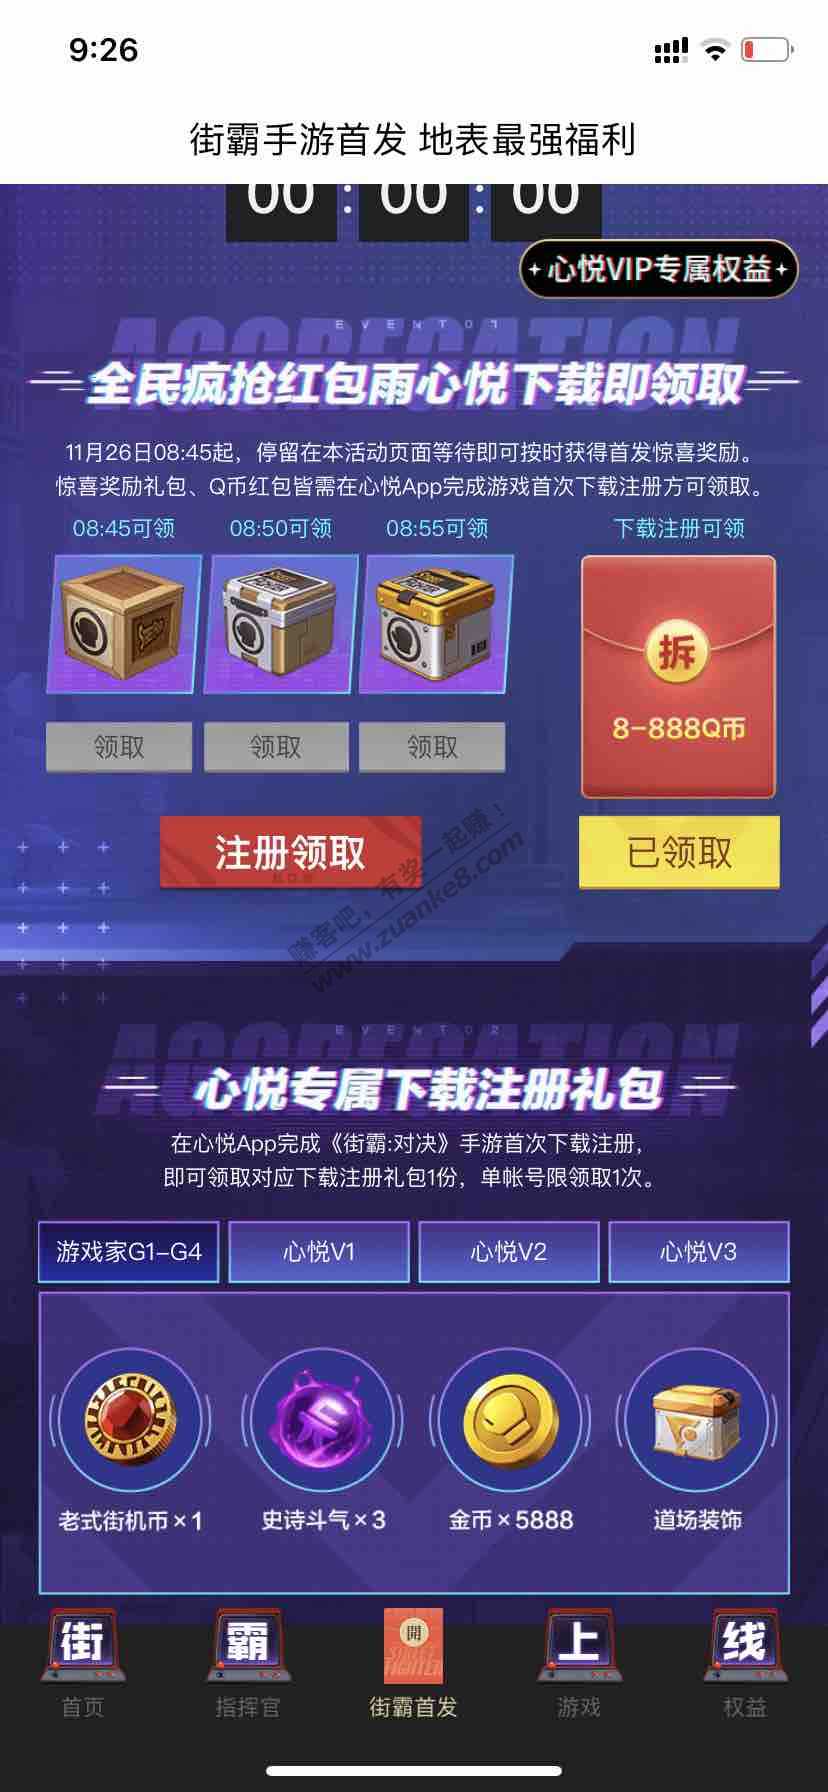 通过这两个渠道下载新游戏可以领取最低8块钱q币-惠小助(52huixz.com)